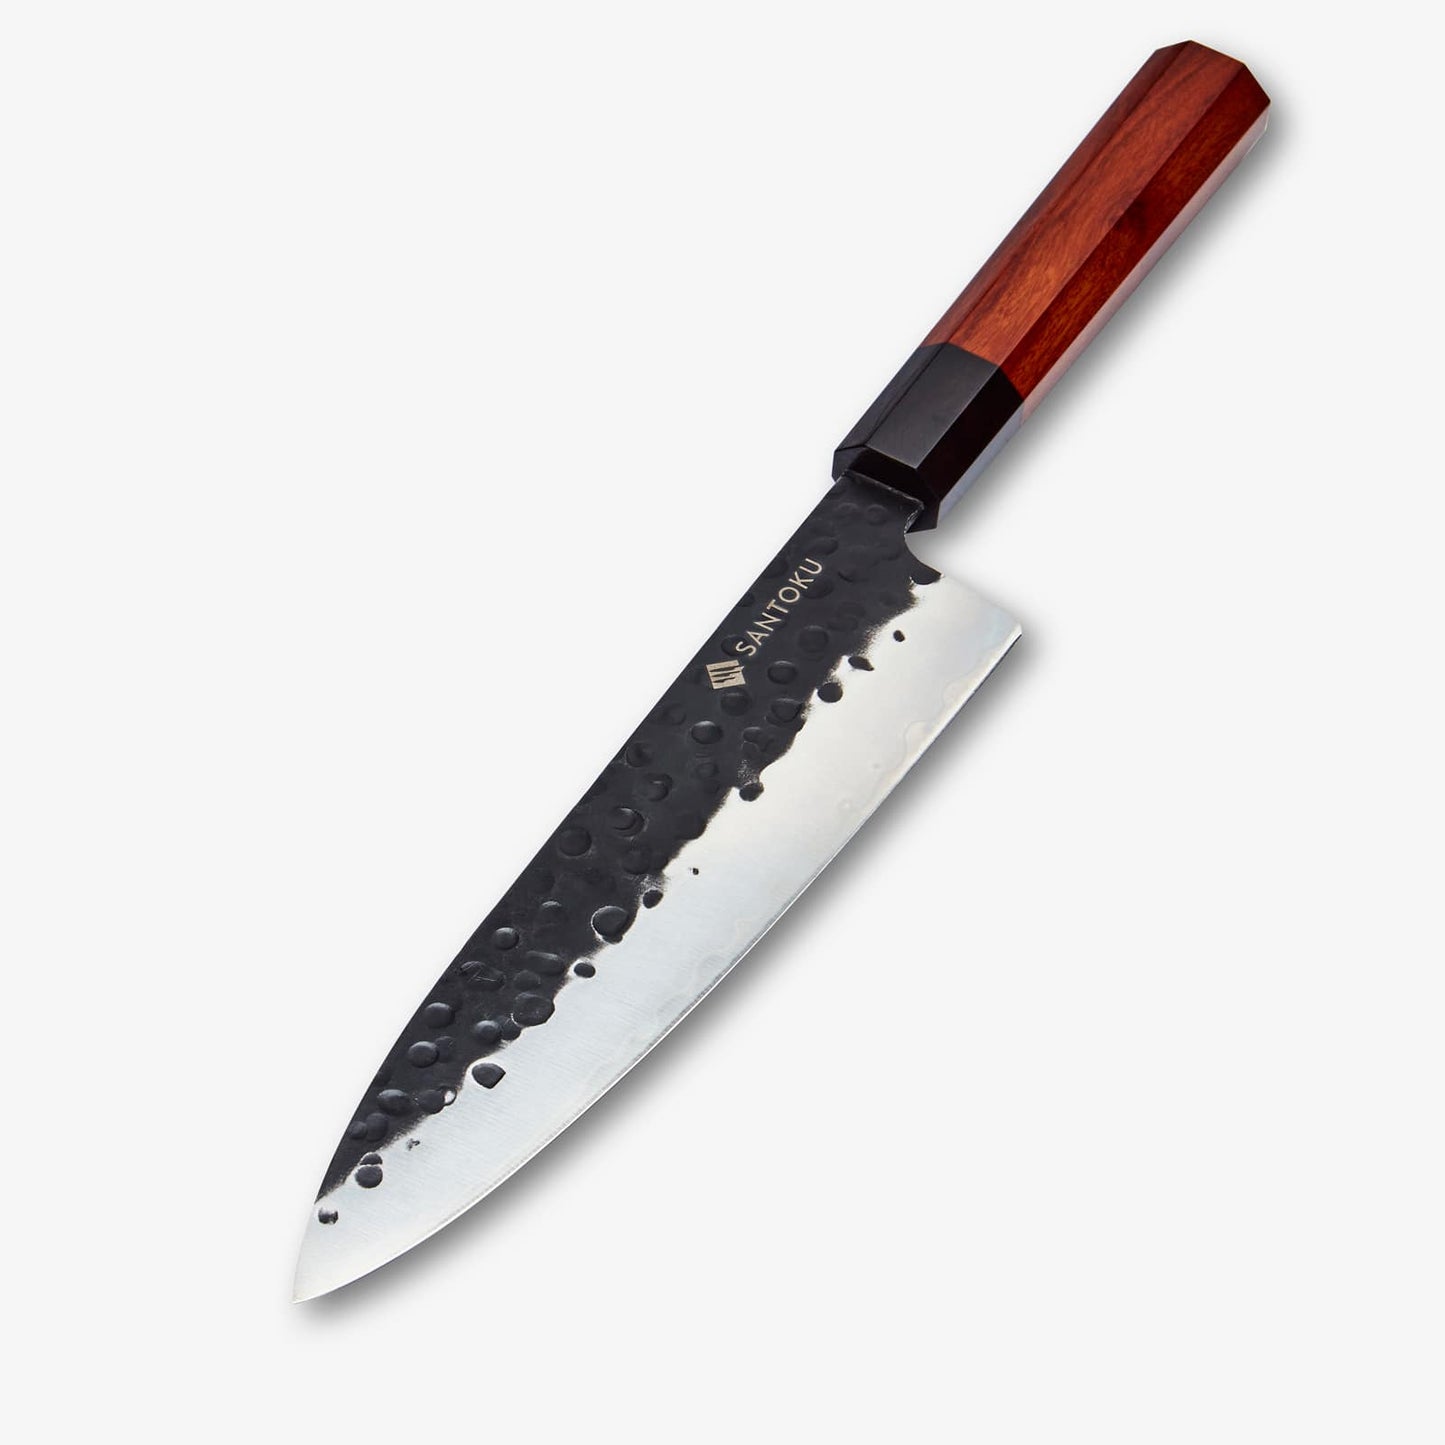 Minato kockkniv